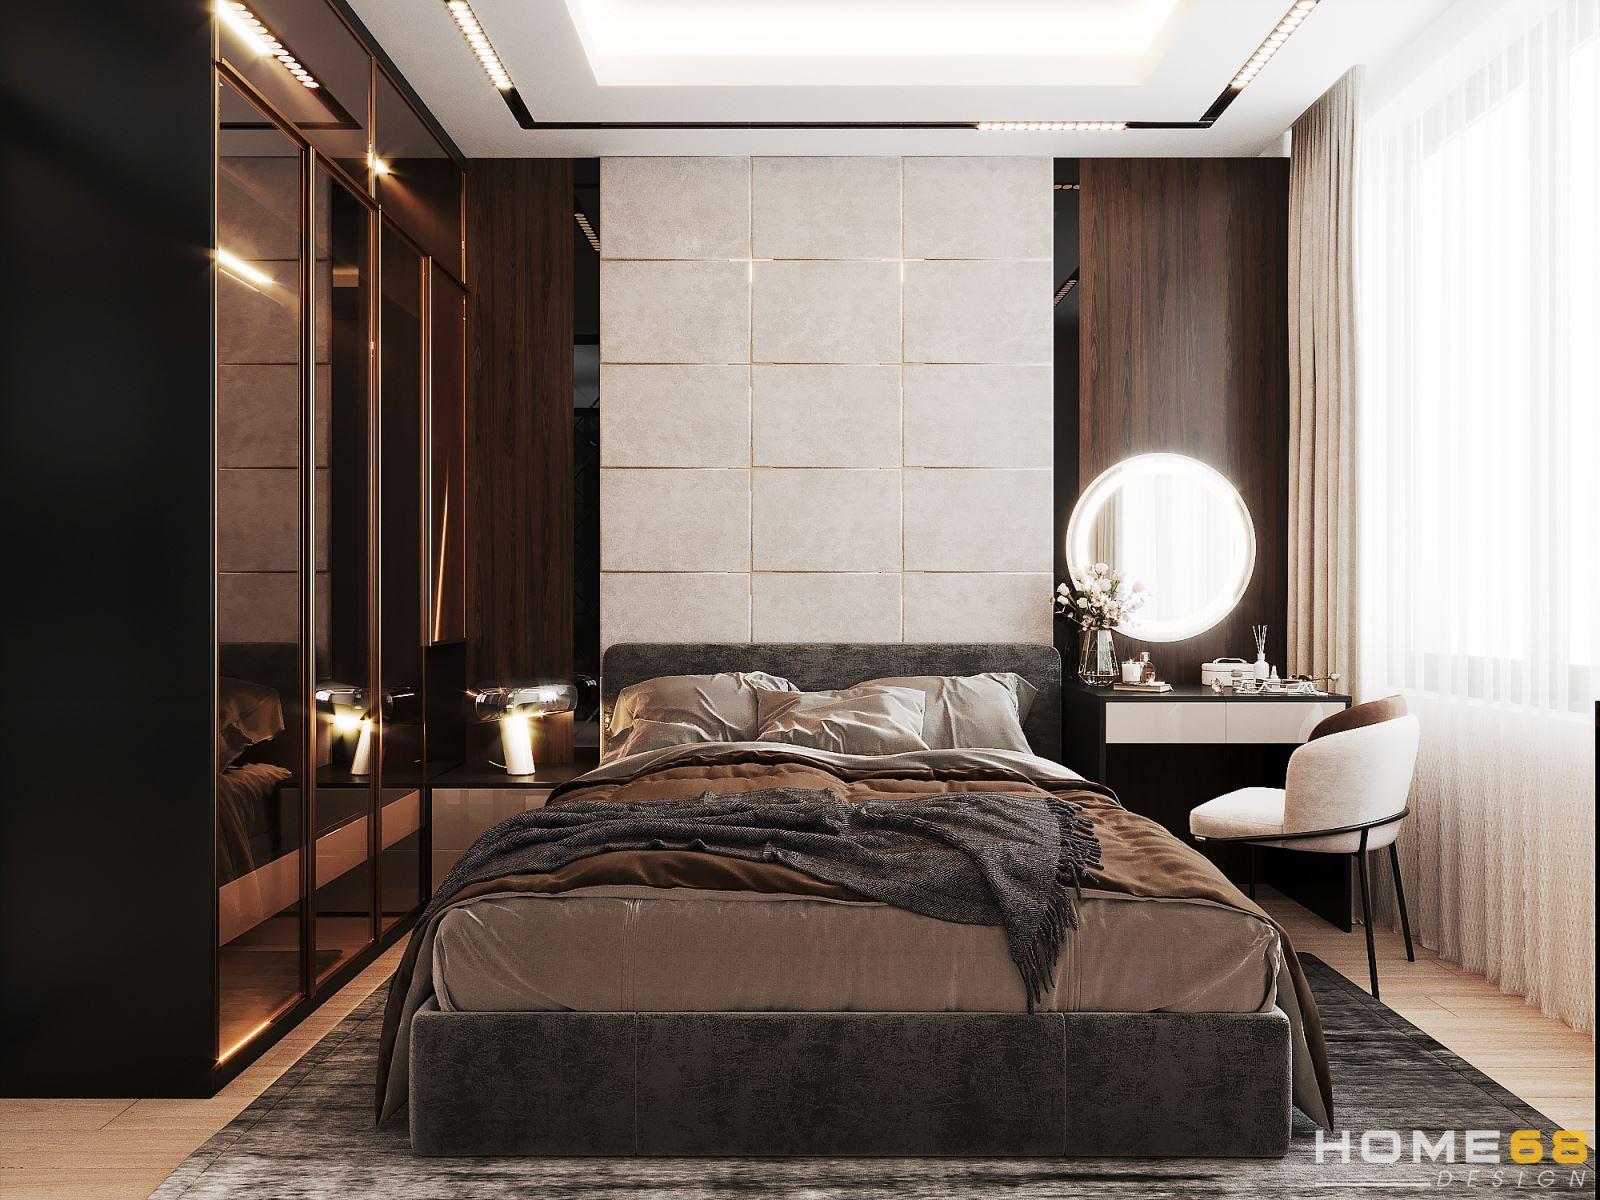 Thiết kế nội thất phòng ngủ hiện đại, đẳng cấp- HOME68